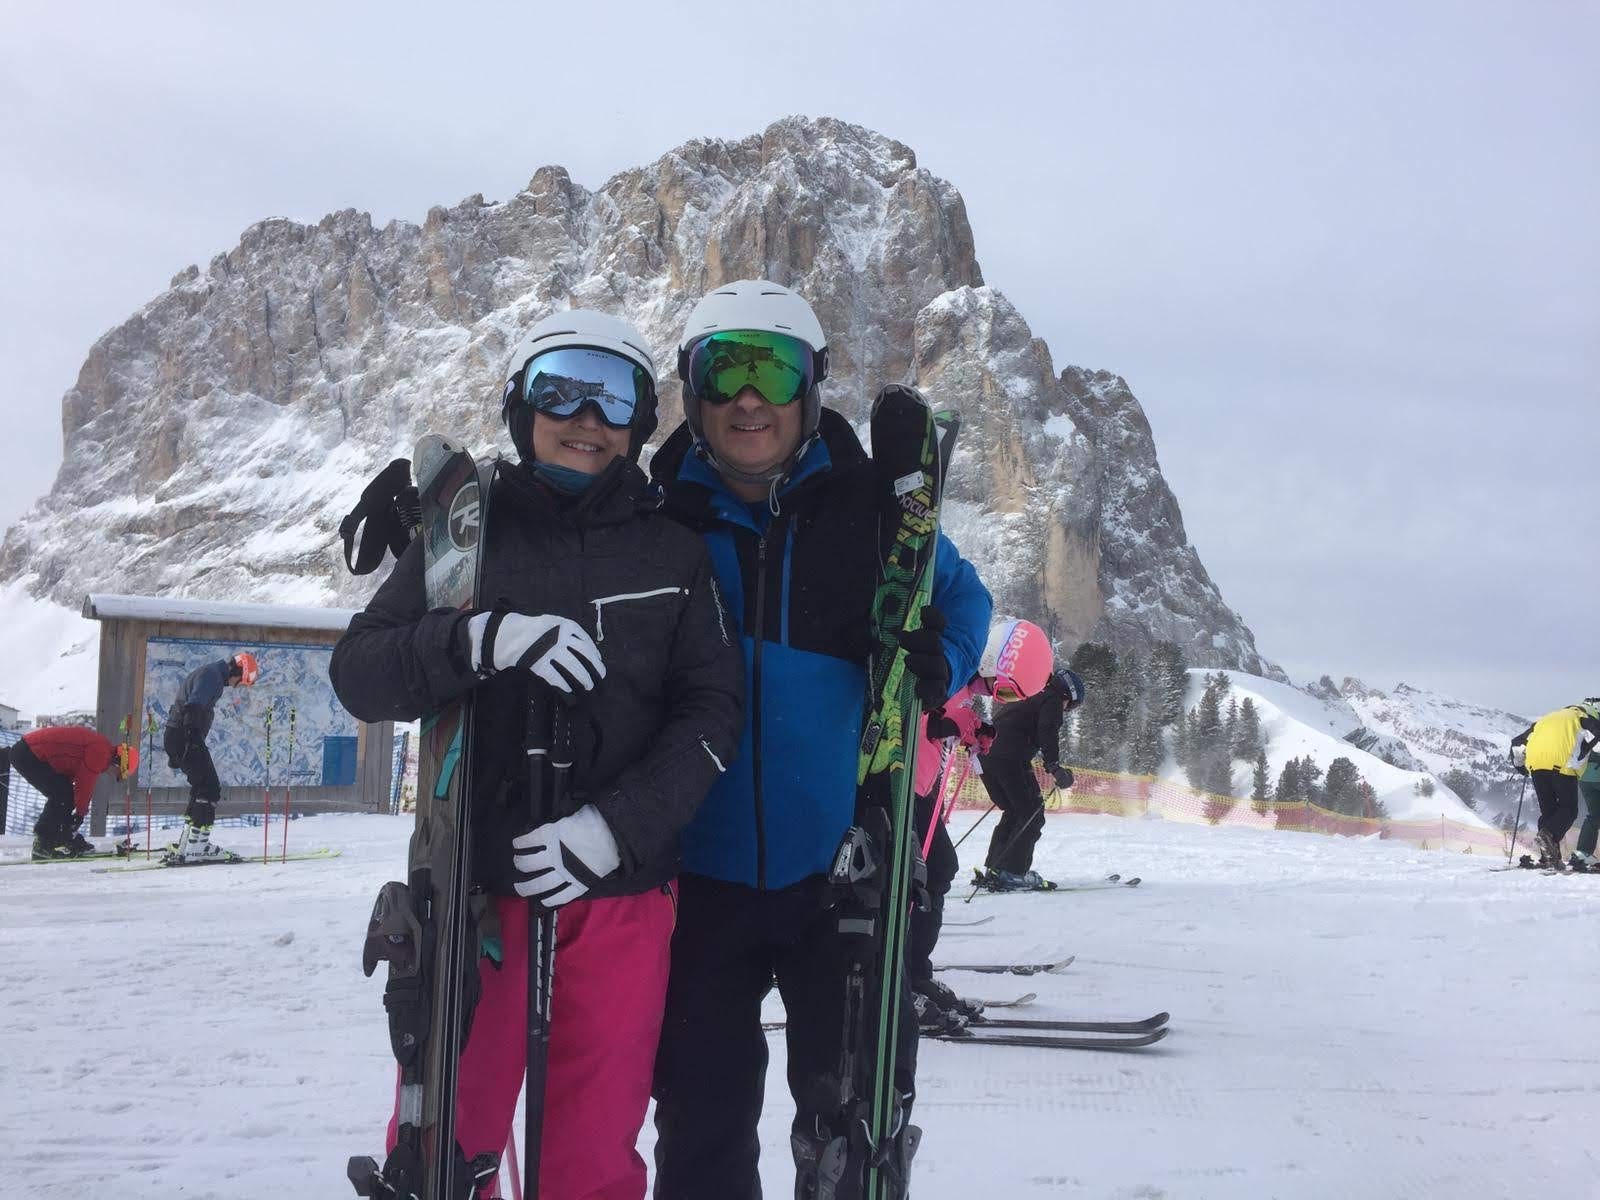 Paul Kirkwood and wife skiing